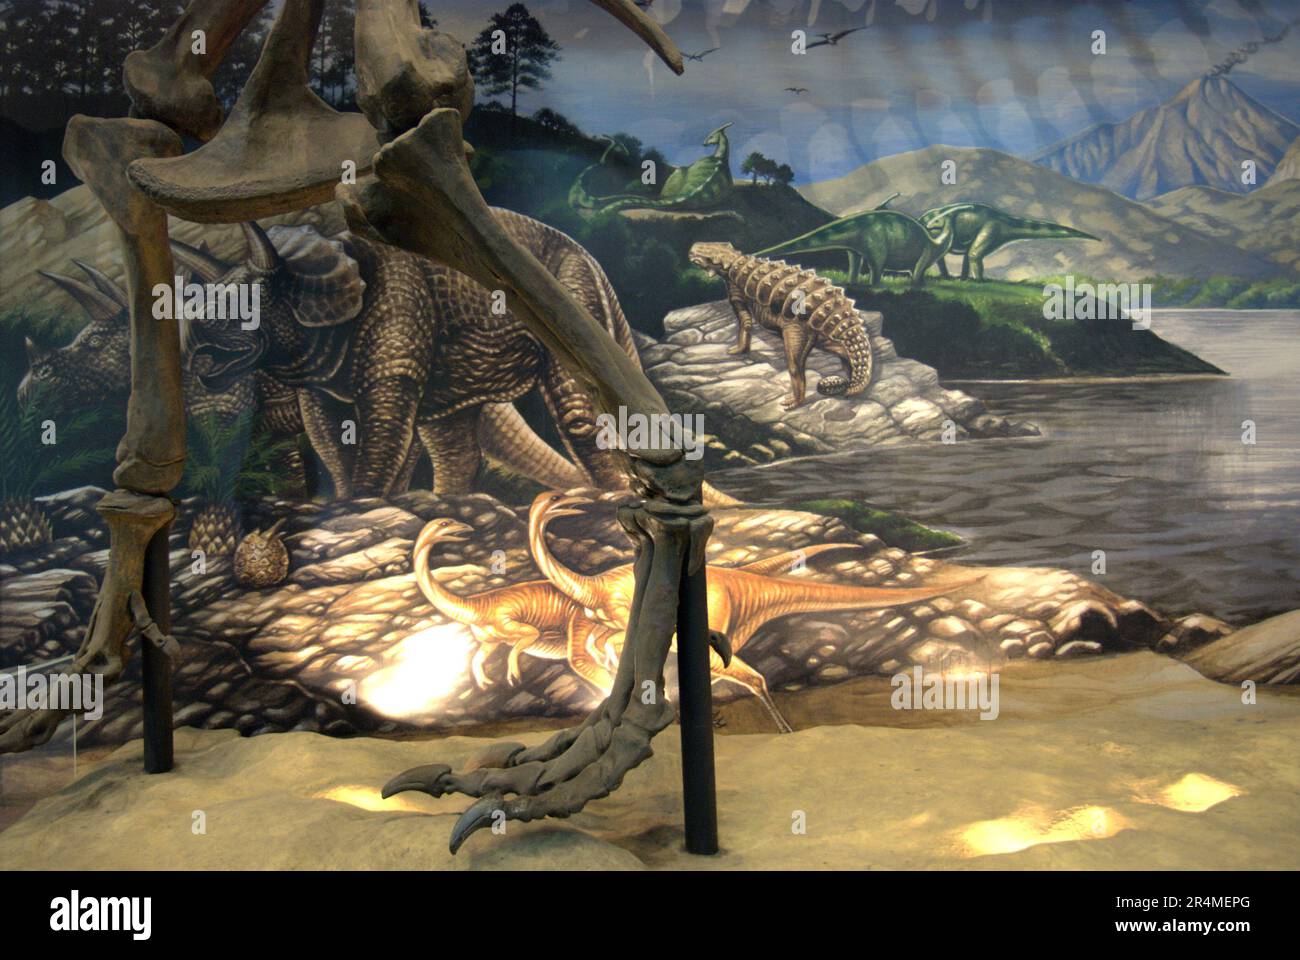 Füße einer Tyrannosaurus rex Rekonstruktion, im Hintergrund eines Bildungsposters im Museum Geologi (Geologiemuseum) in Bandung, West-Java, Indonesien. Stockfoto